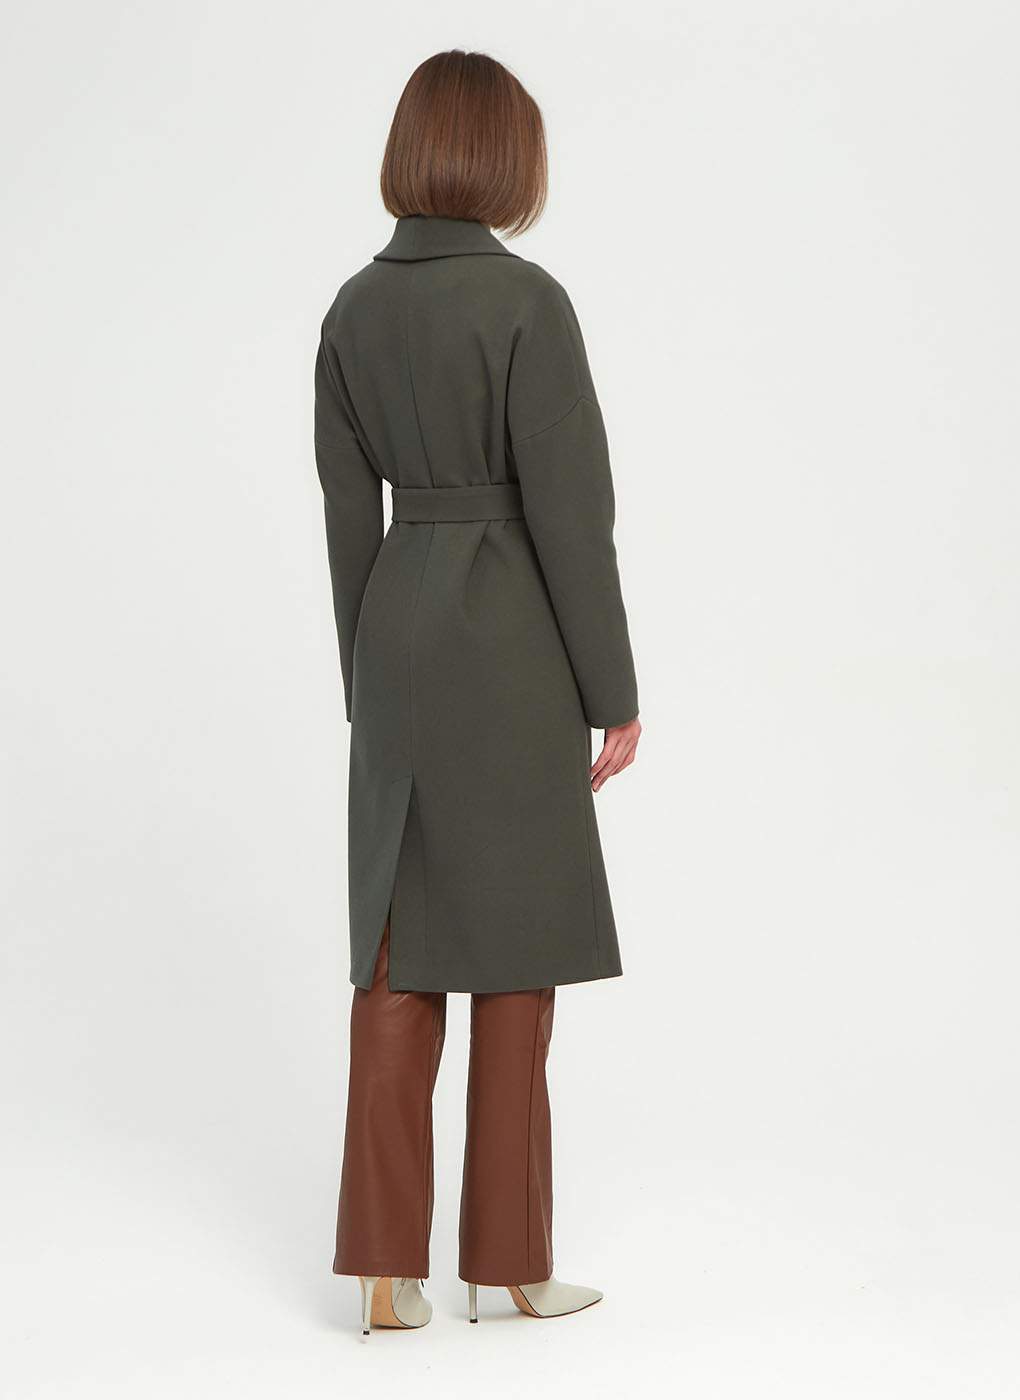 Пальто женское Giulia Rosetti 56204 зеленое 40 RU